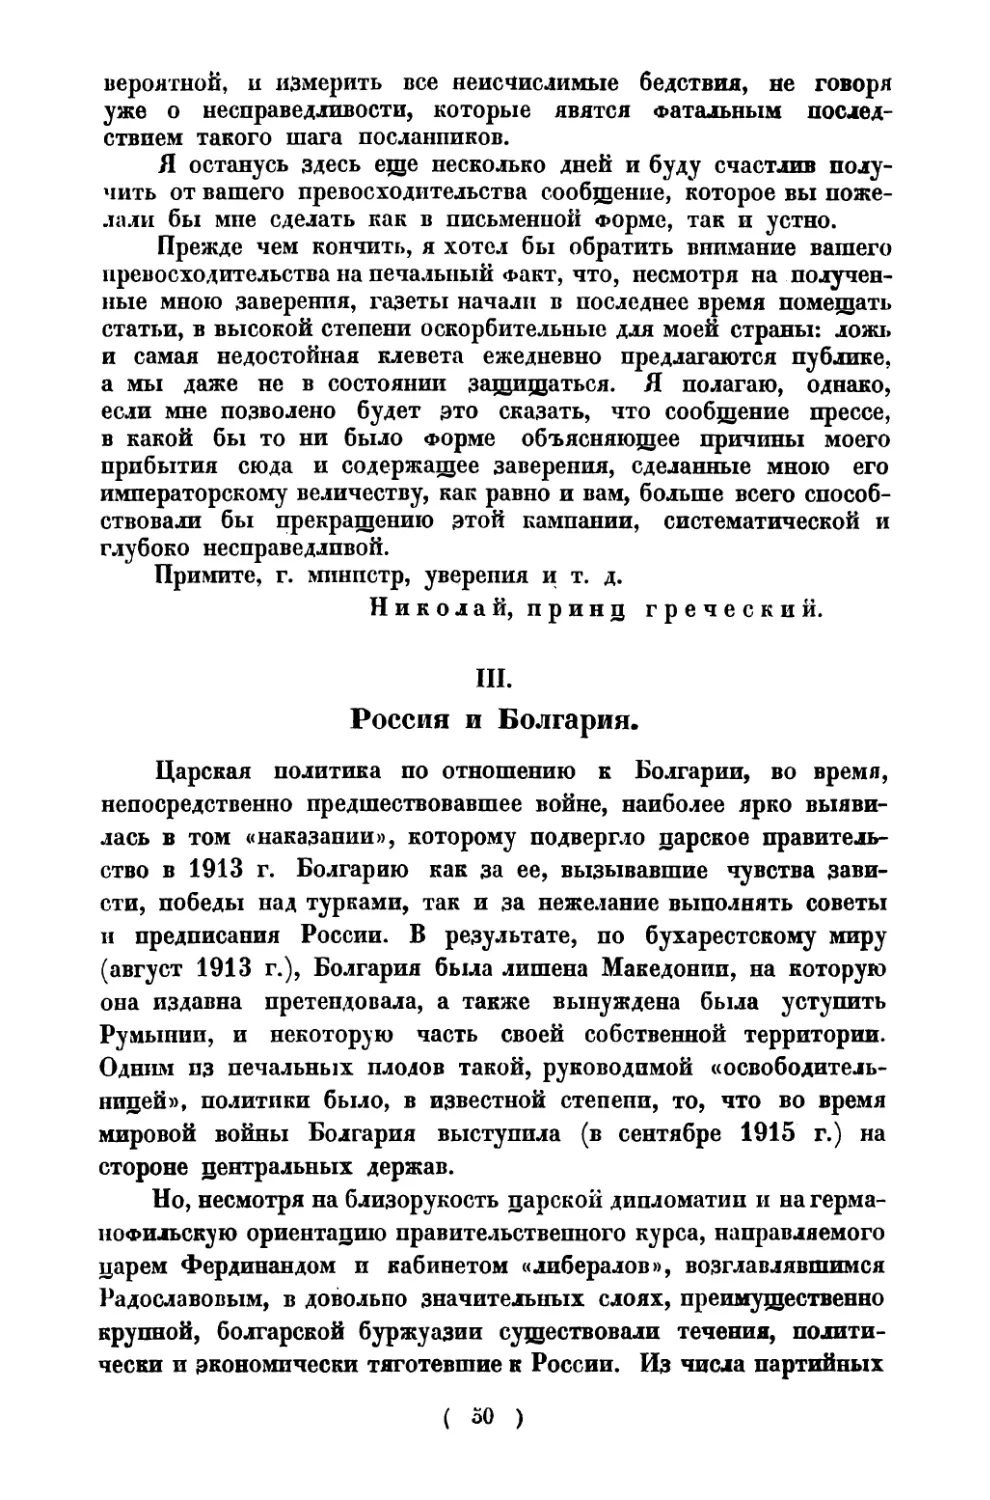 III. Россия и Болгария